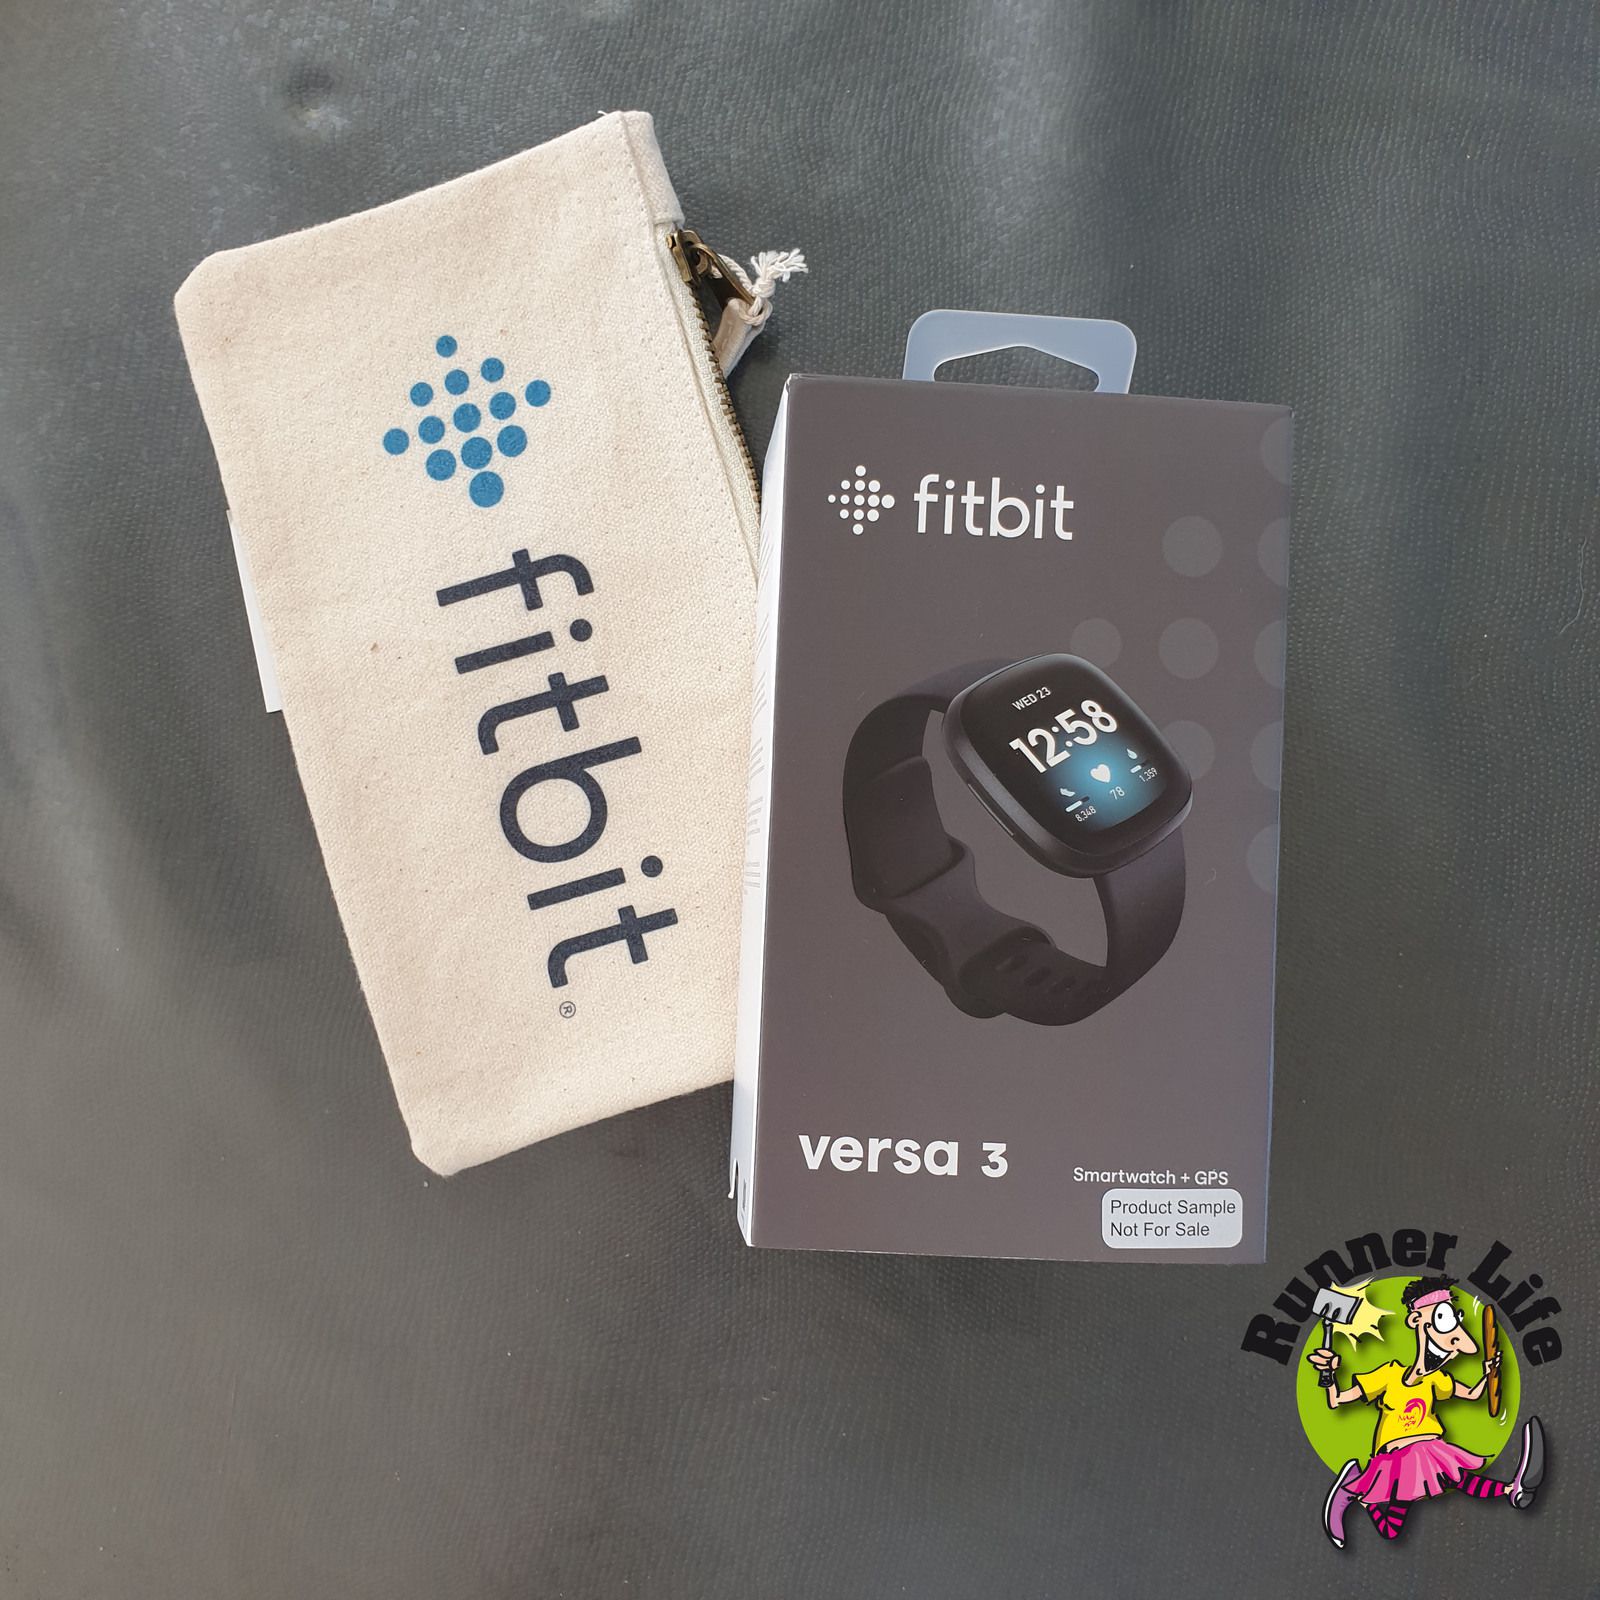 Jusqu'à -30% sur les montres connectées Fitbit